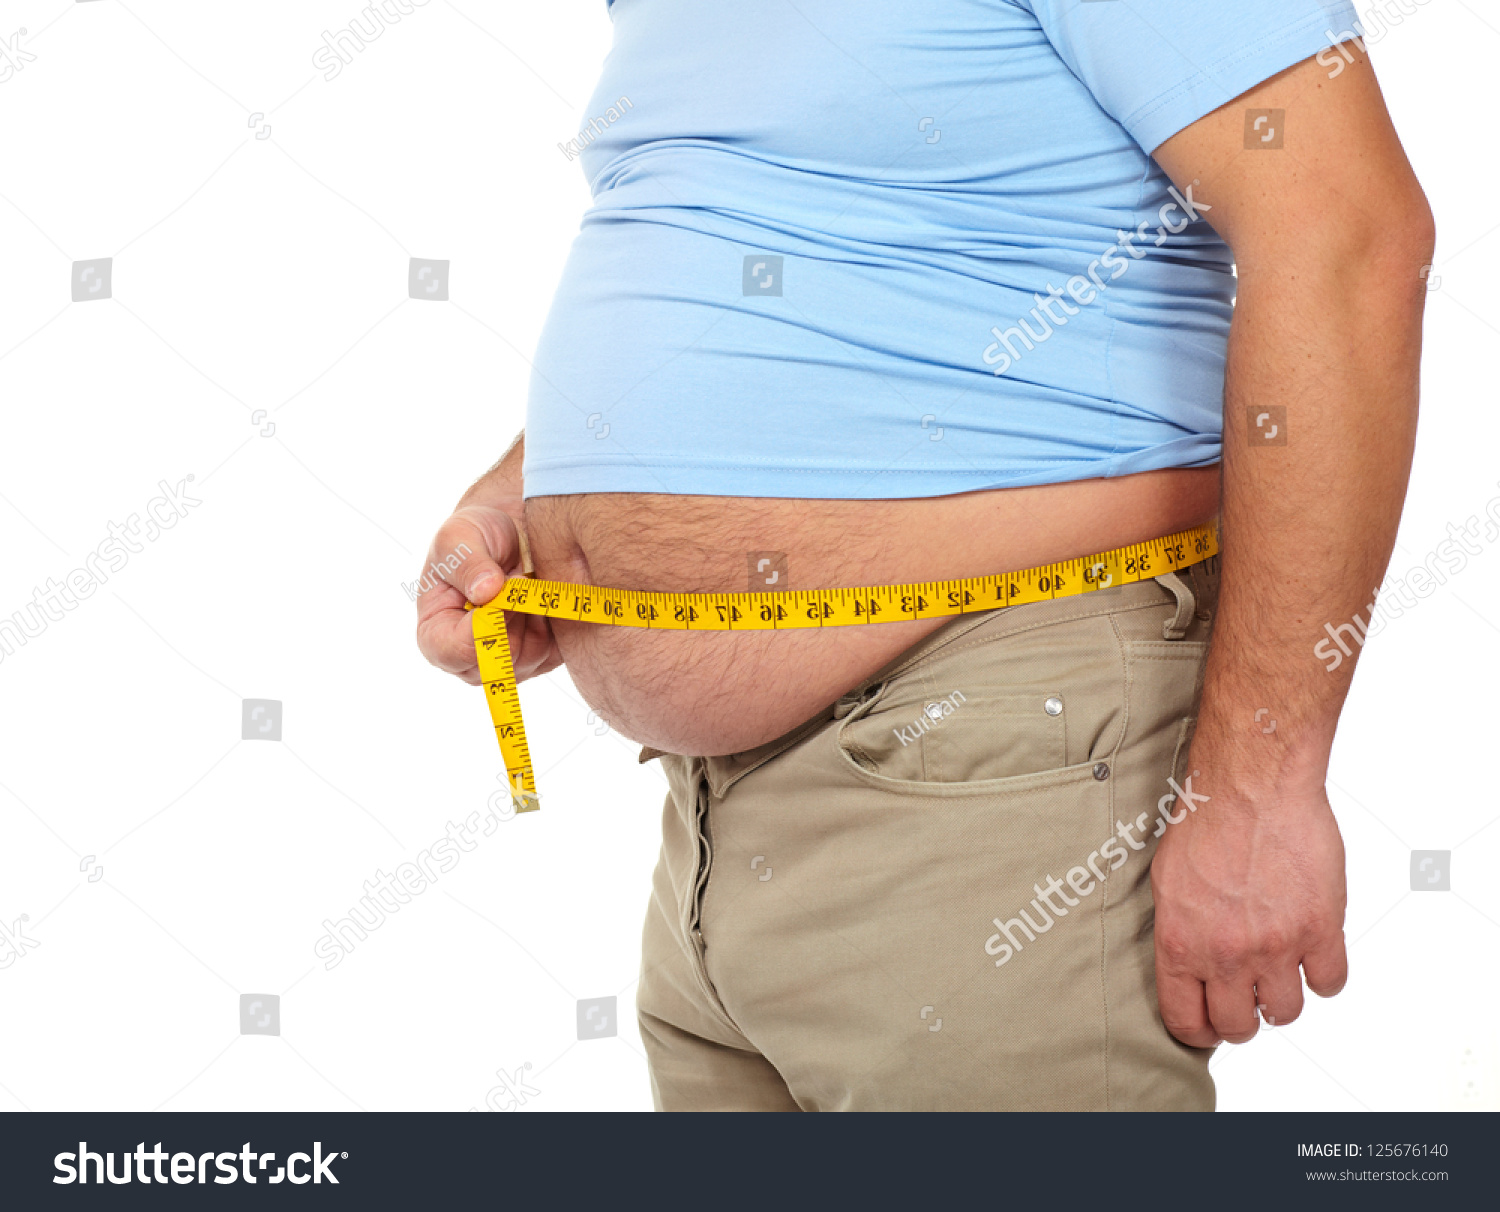 Избавиться от лишнего веса мужчине в домашних условиях